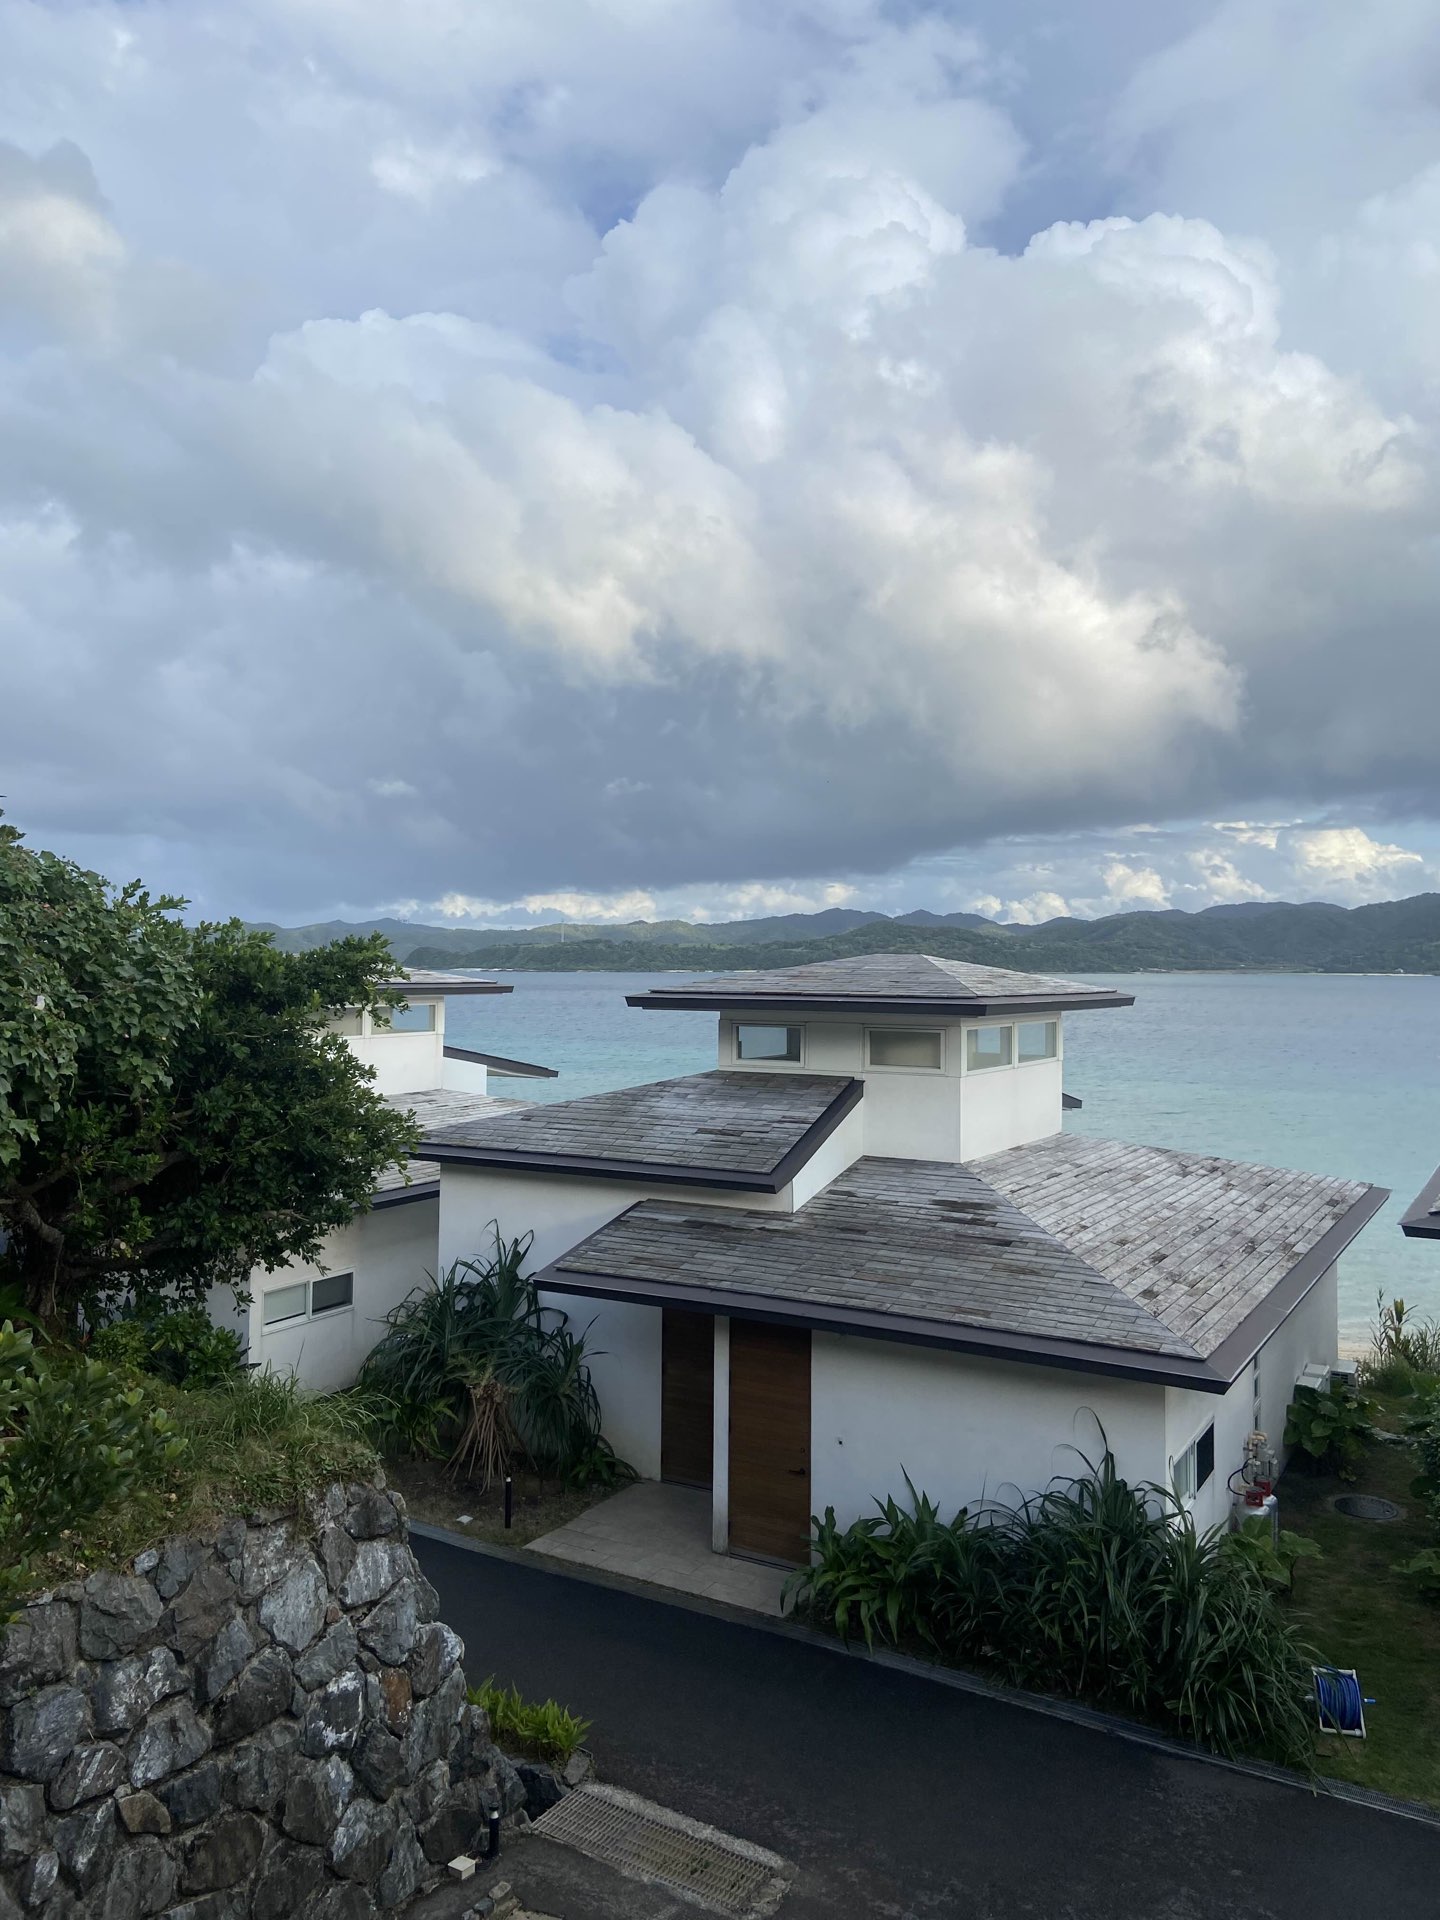 【绝景×温泉最强组合】在奄美大岛的别墅度过了最美好的时光